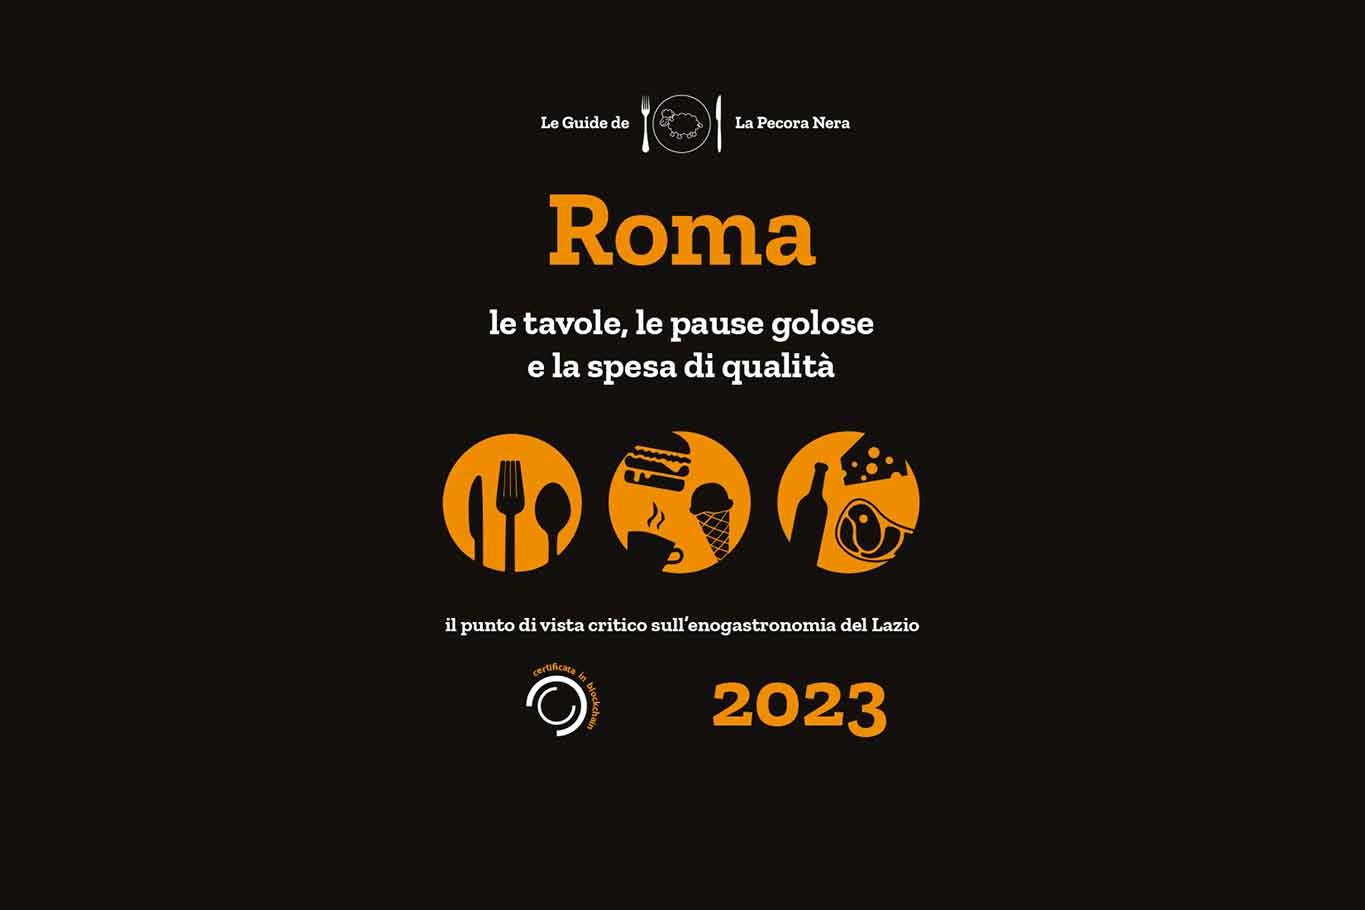 roma-2023,-dove-mangiare-bene-nel-lazio-per-la-pecora-nera